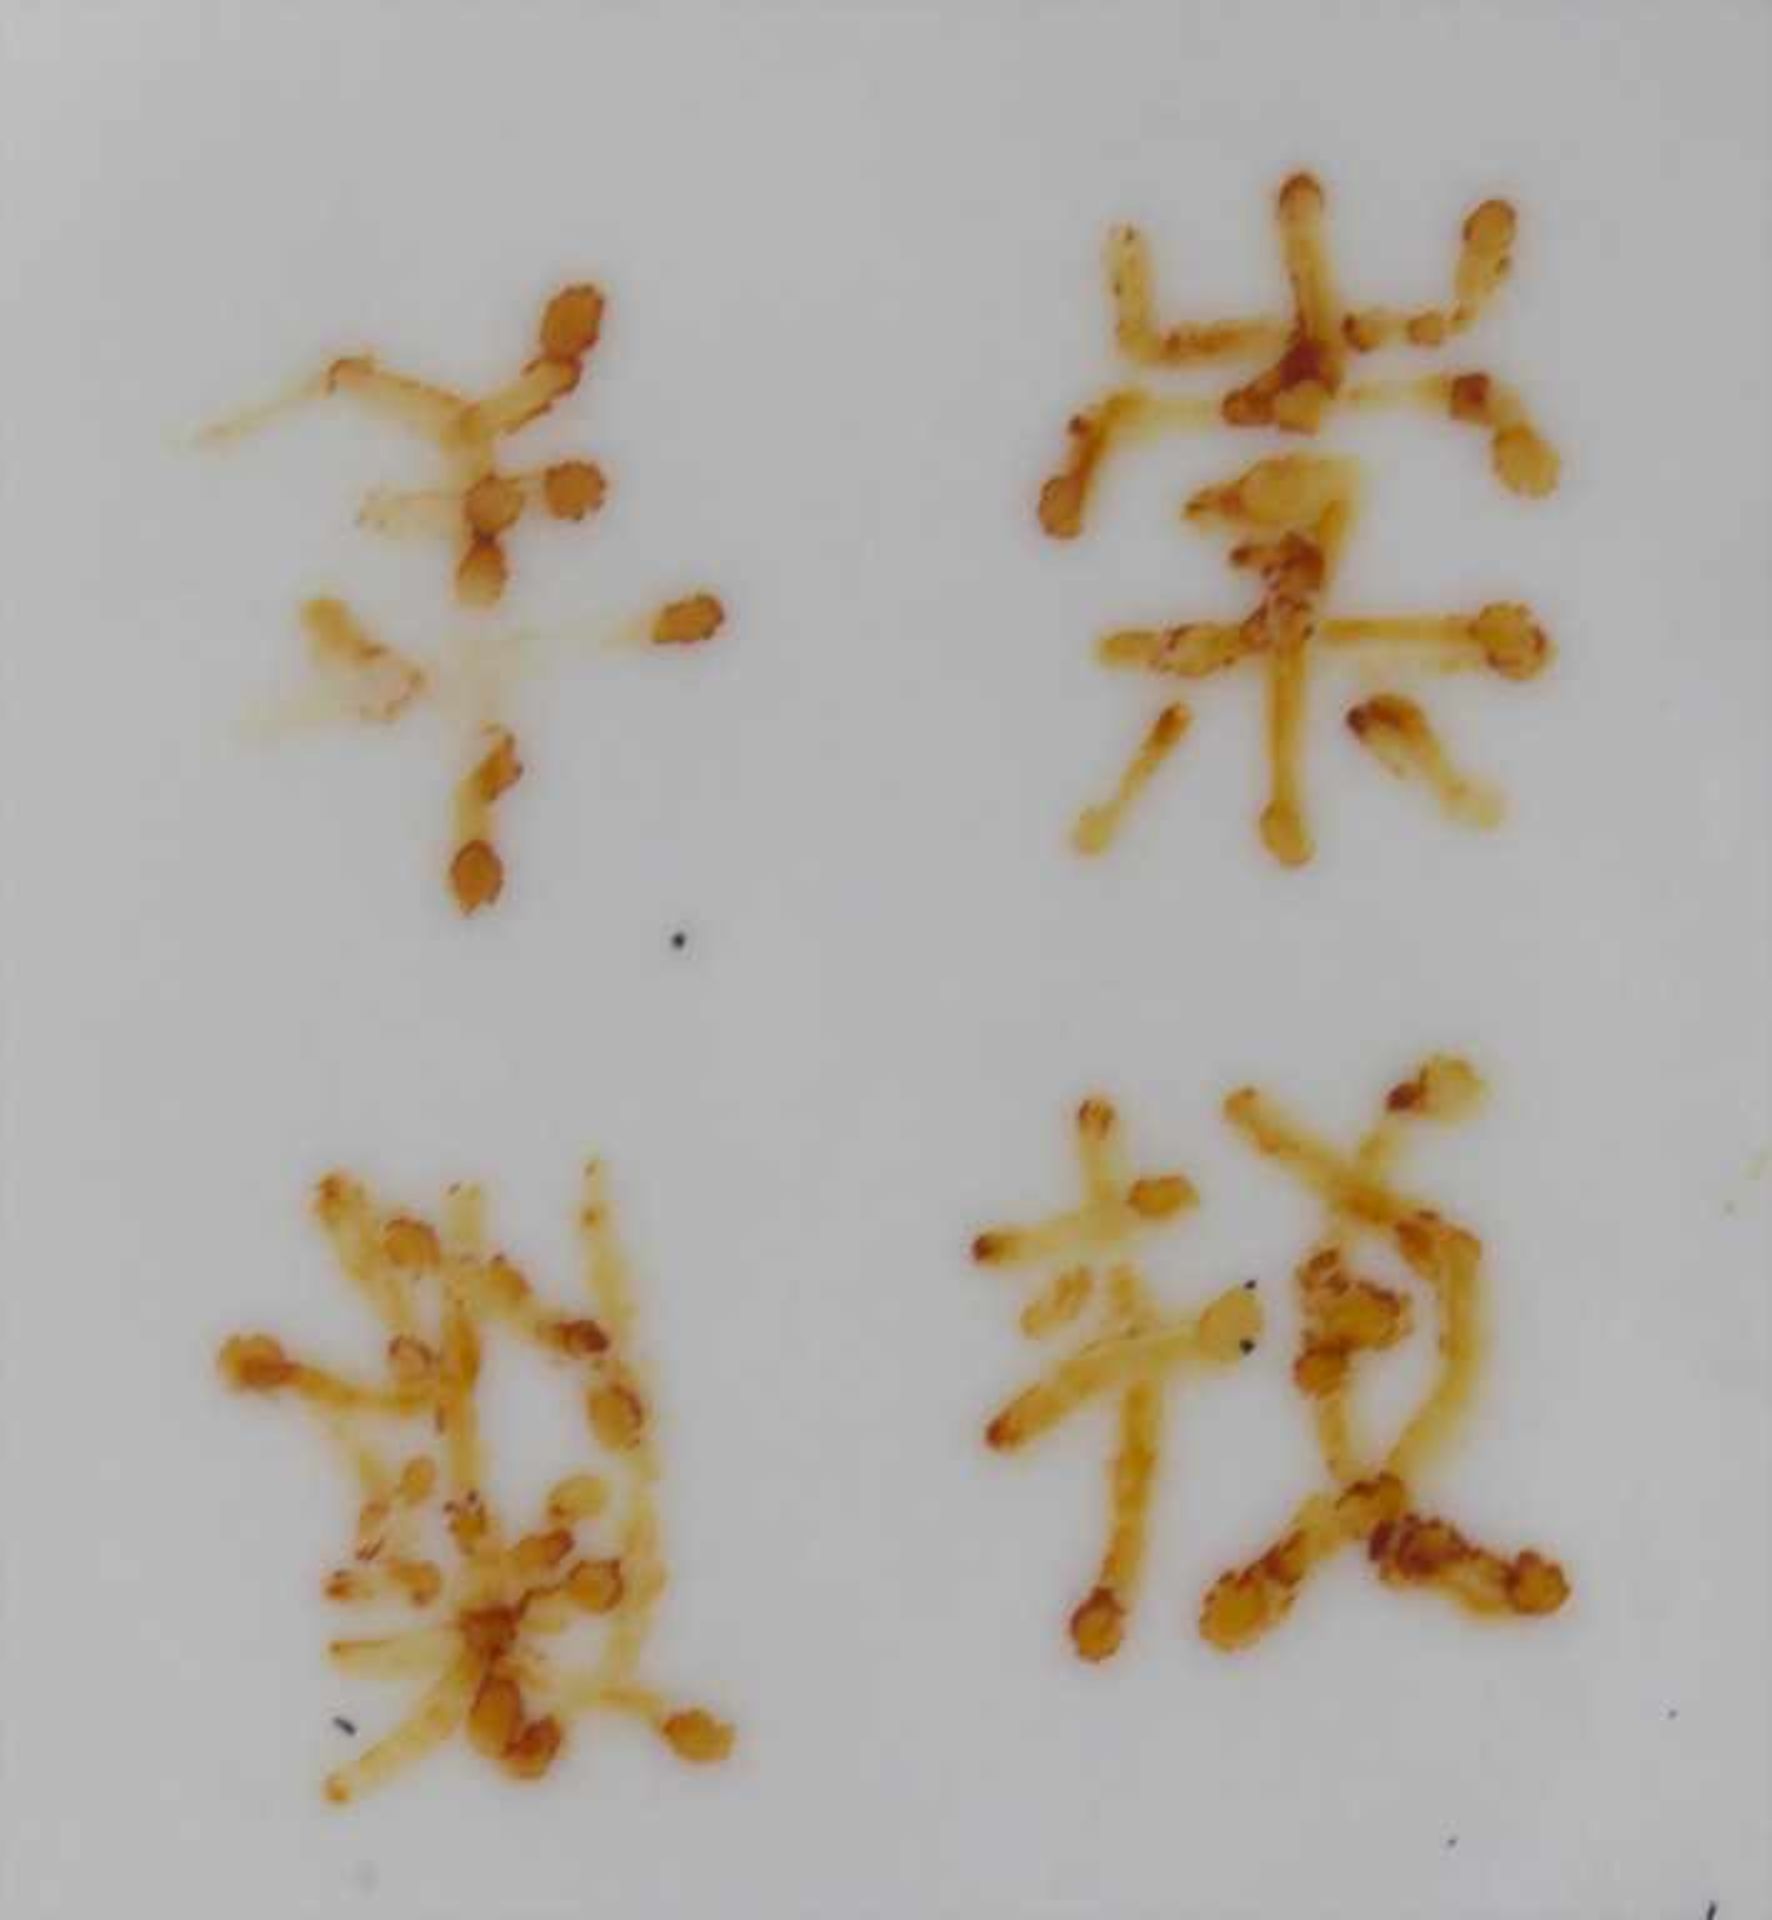 Ziervase, China, späte Qing-DynastieMaterial: Porzellan, polychrom mit Floral, Glückspfirsichen - Image 6 of 6